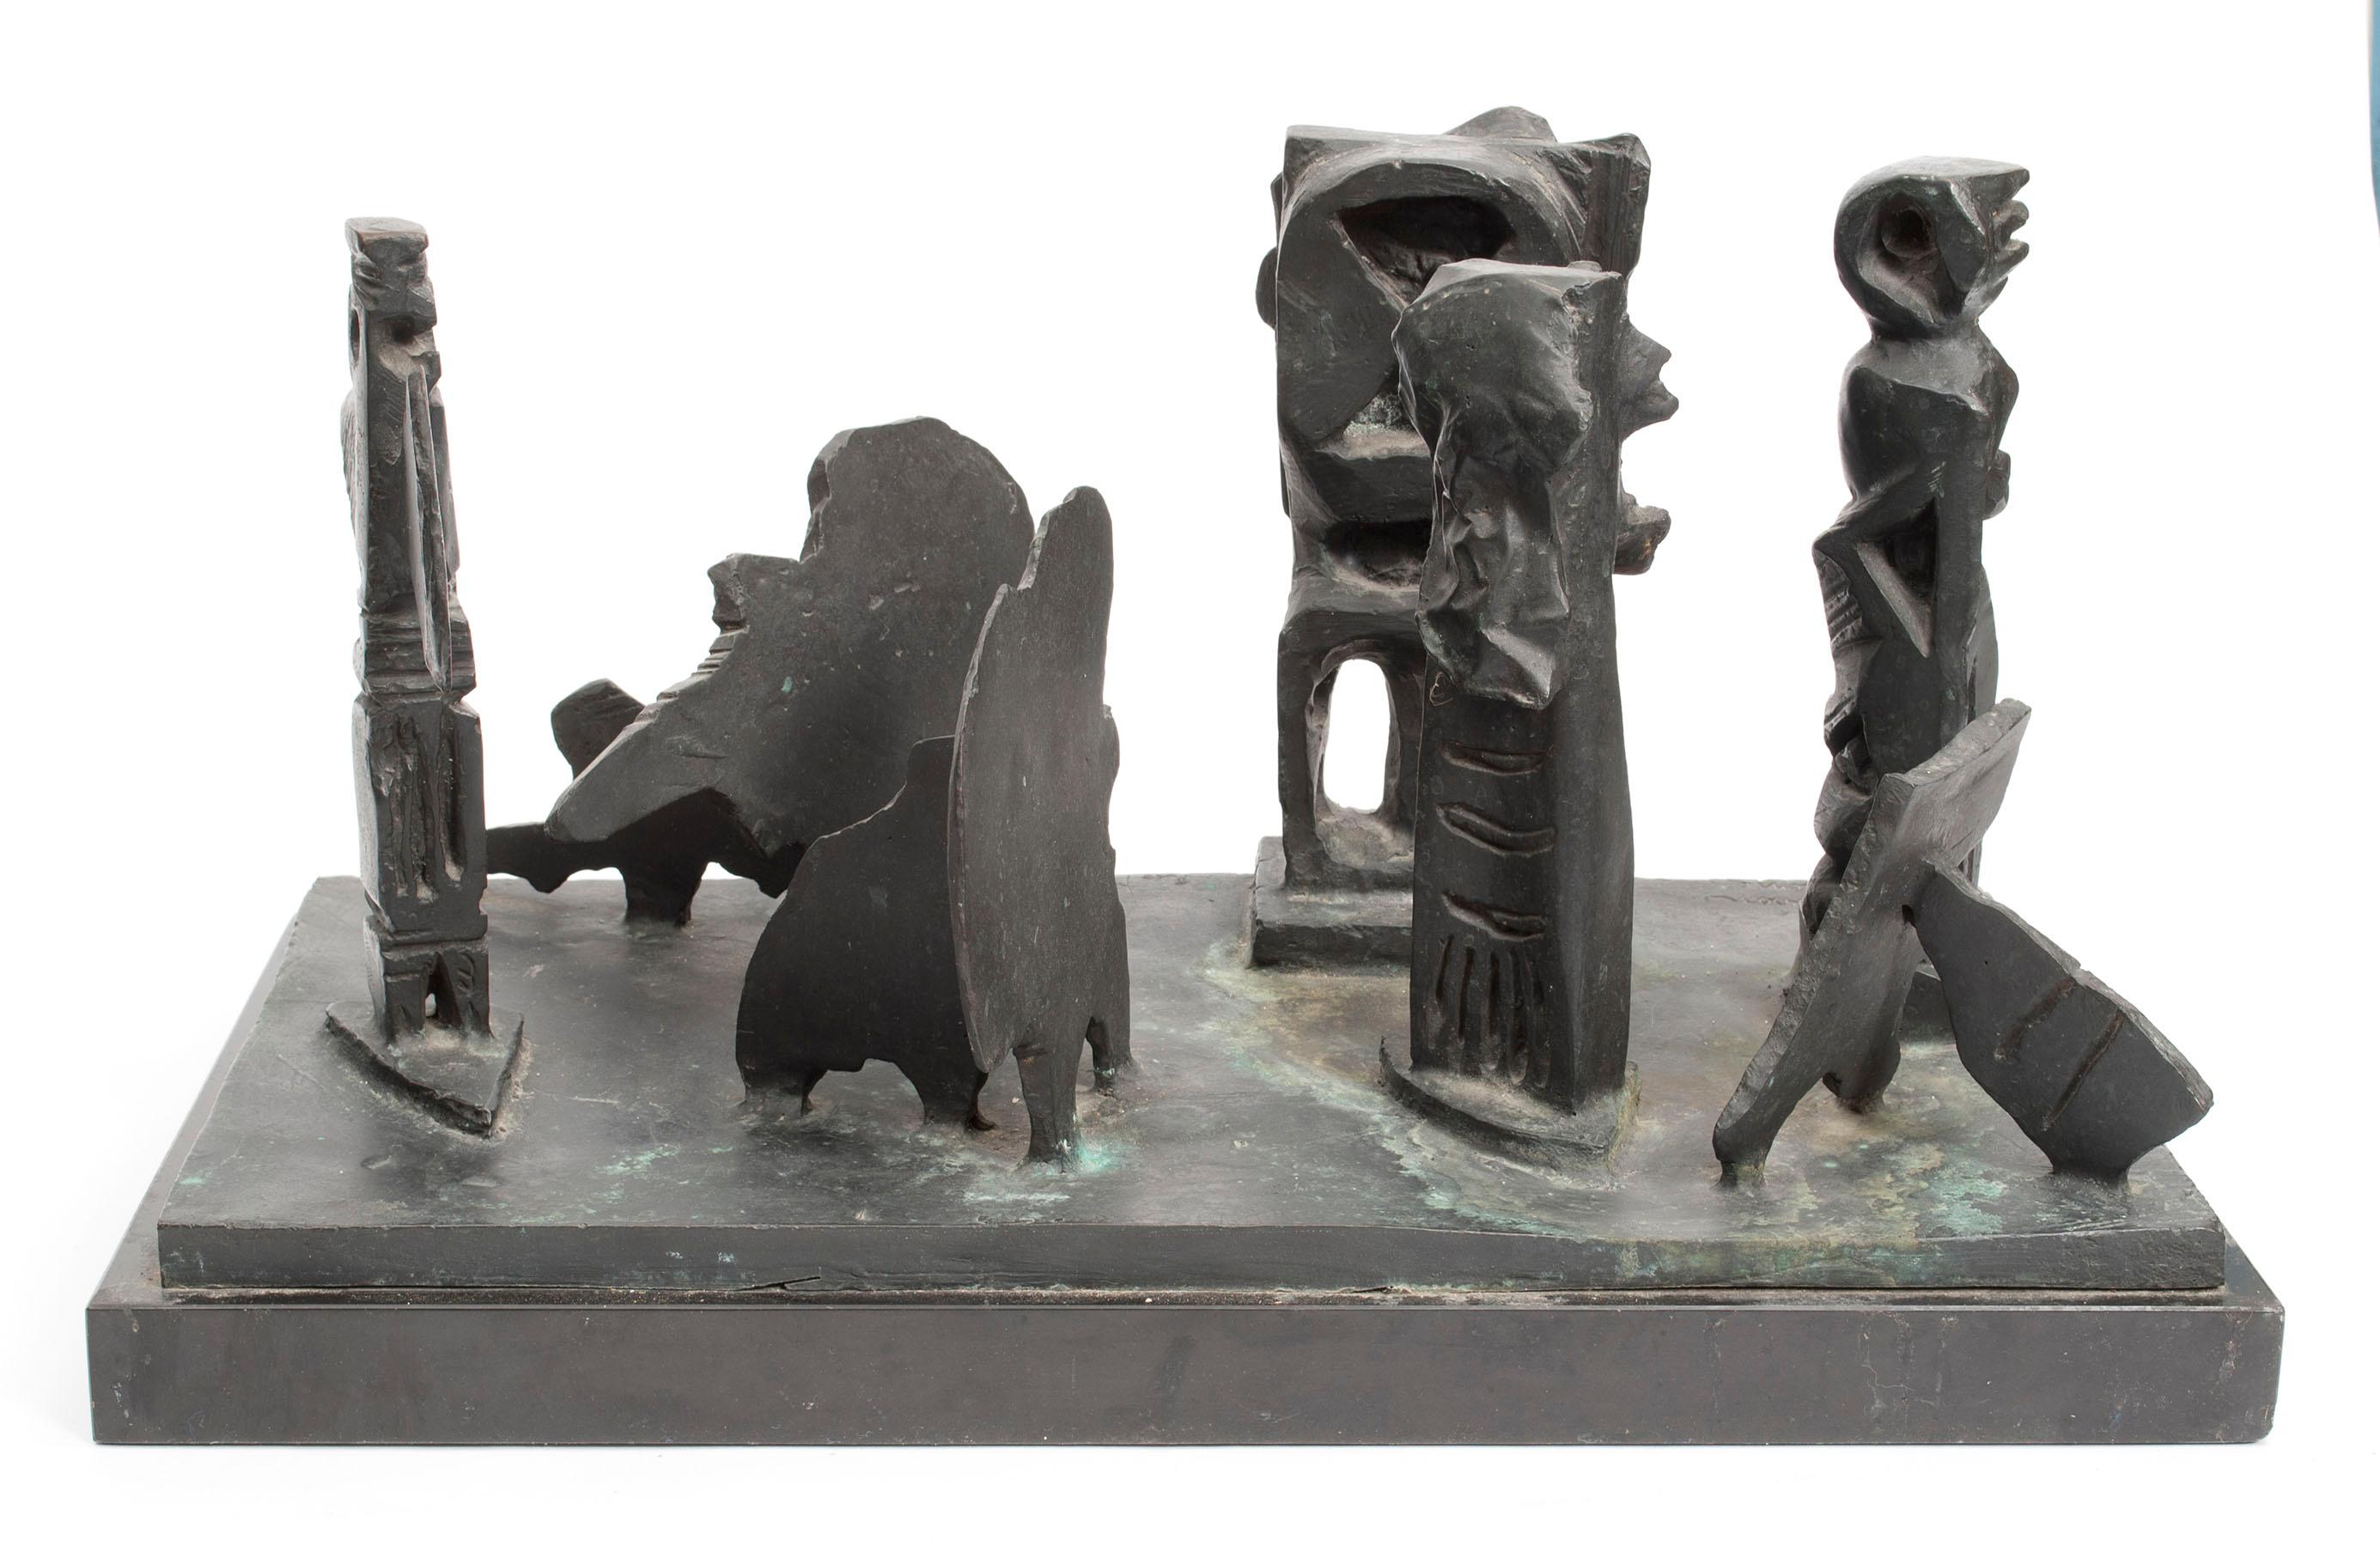 Abstrakte Bronzeskulptur Metropolis im Stil des Brutalismus der Moderne, nach Louise Nevelson